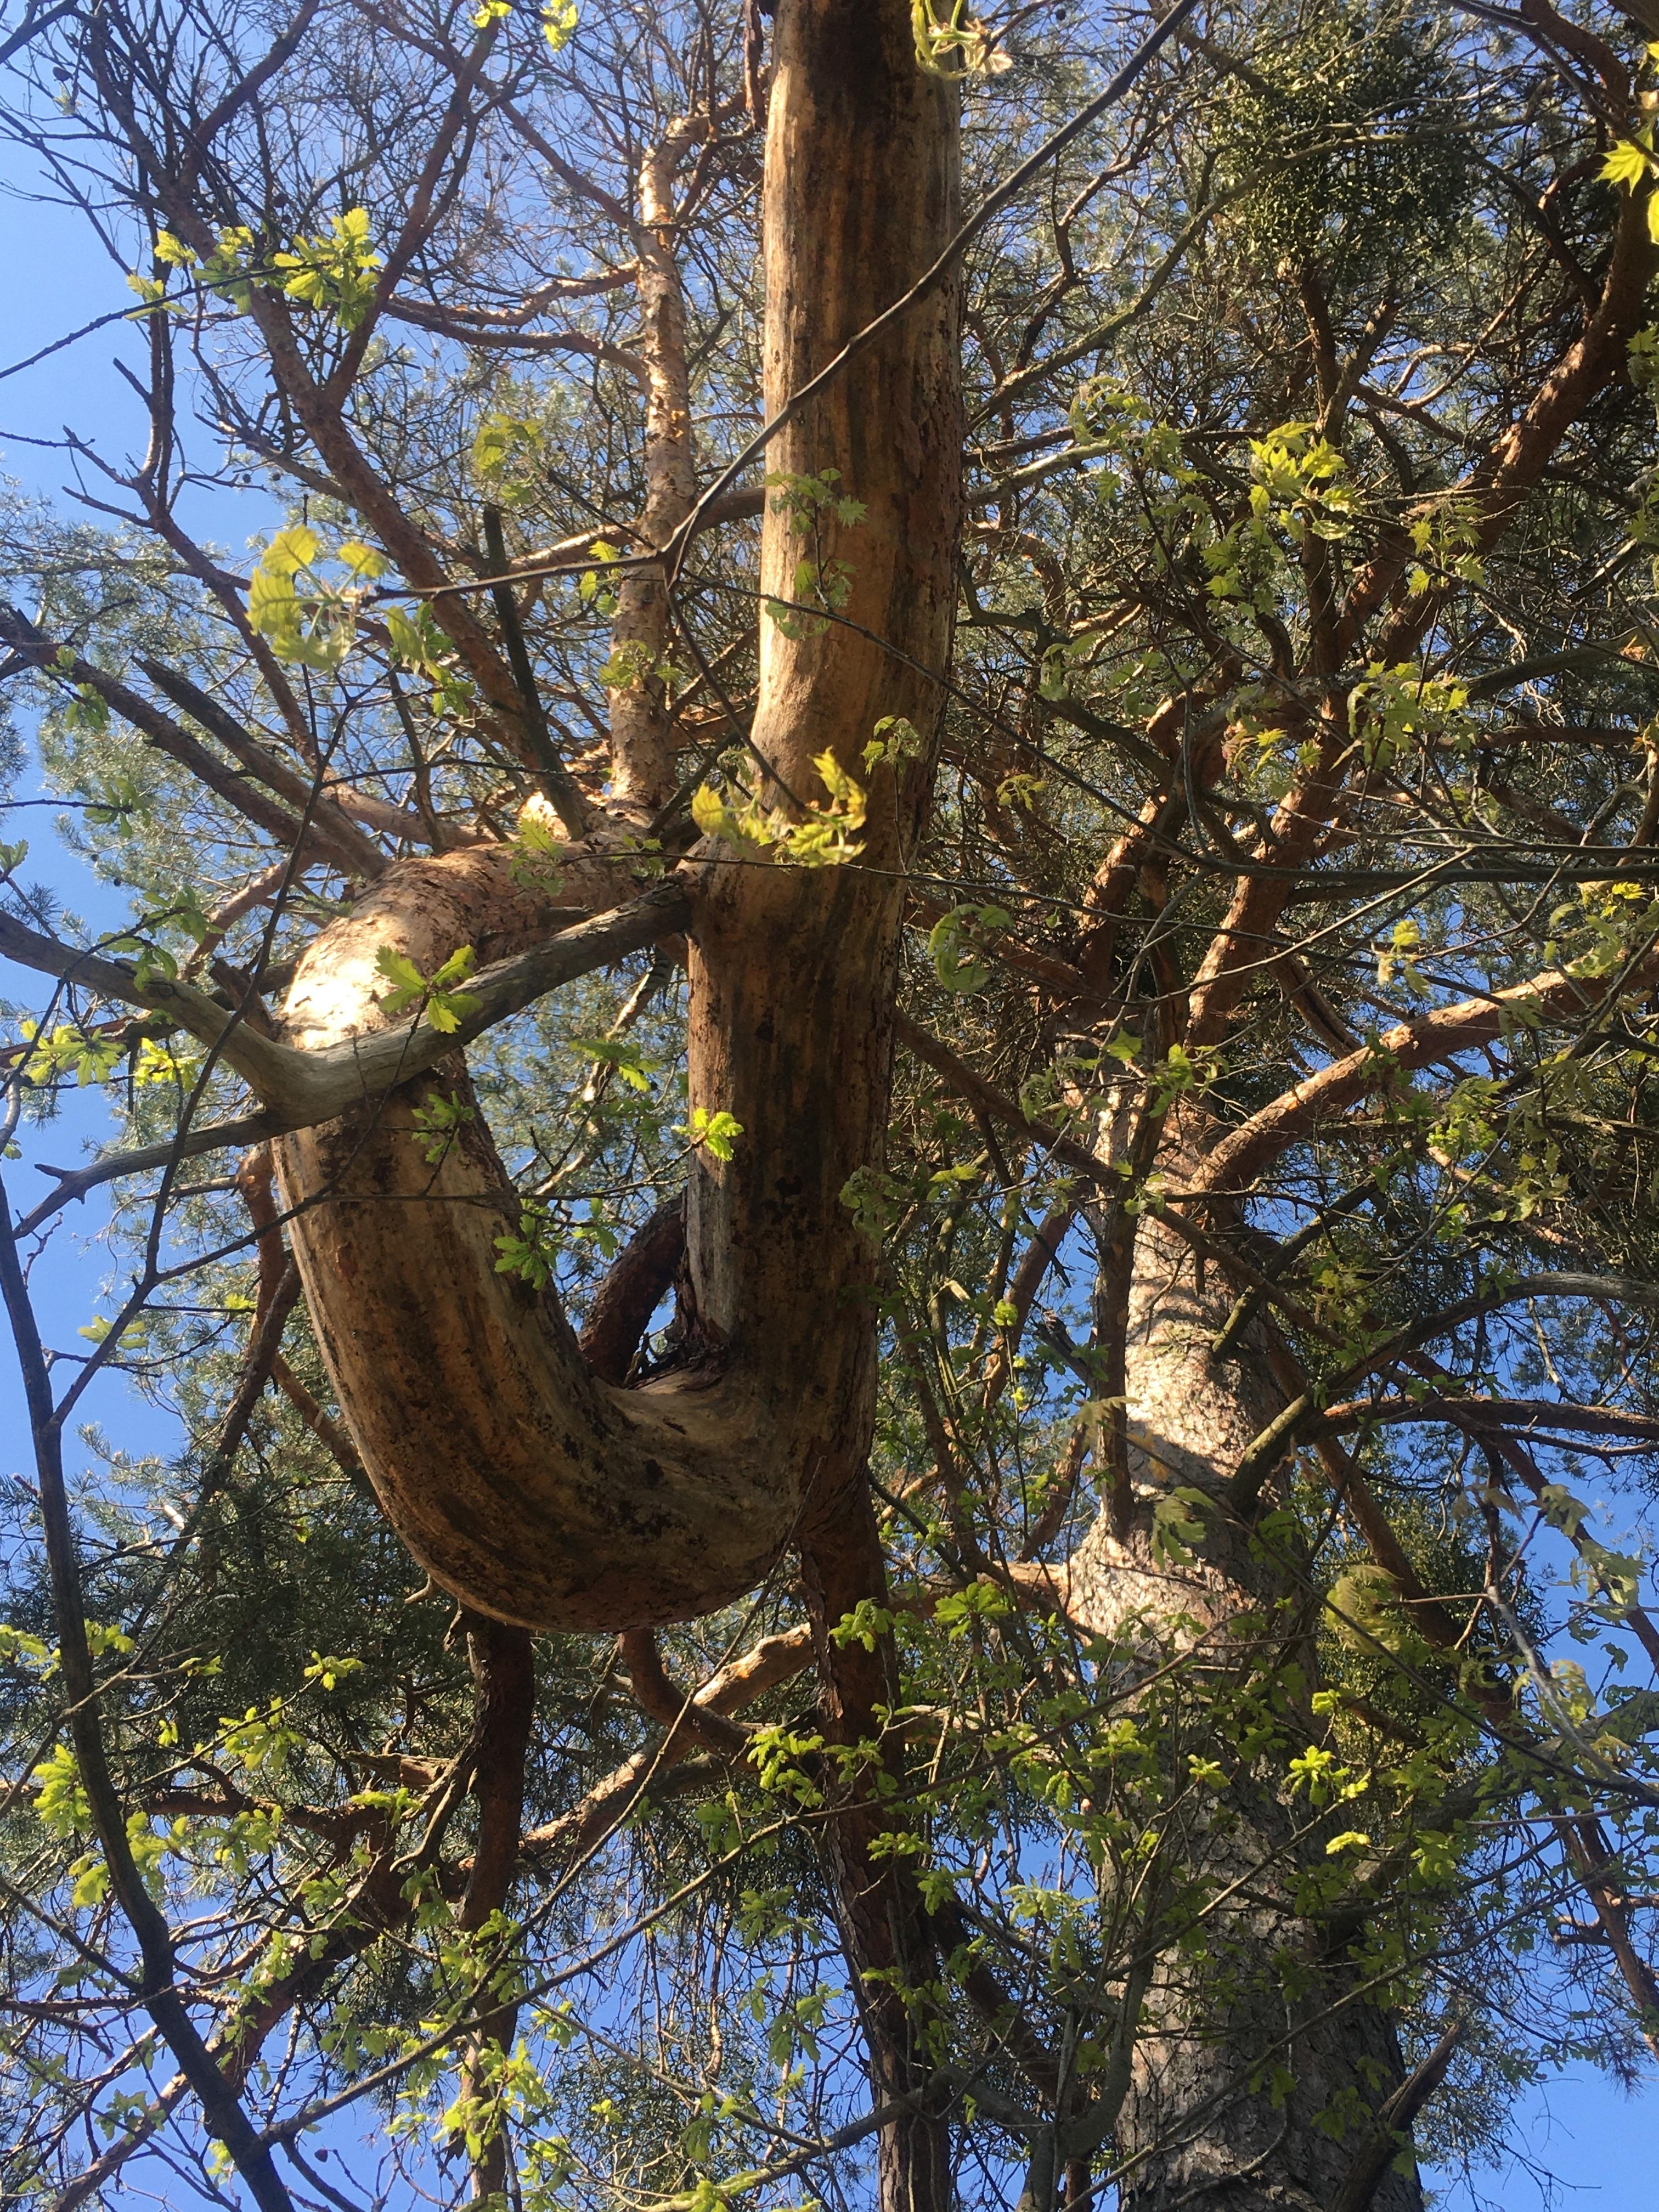 Knoten im Baum #Baum#Natur#entdeckt beim Spaziergang#herrlicheNatur#Ästeverschlungen